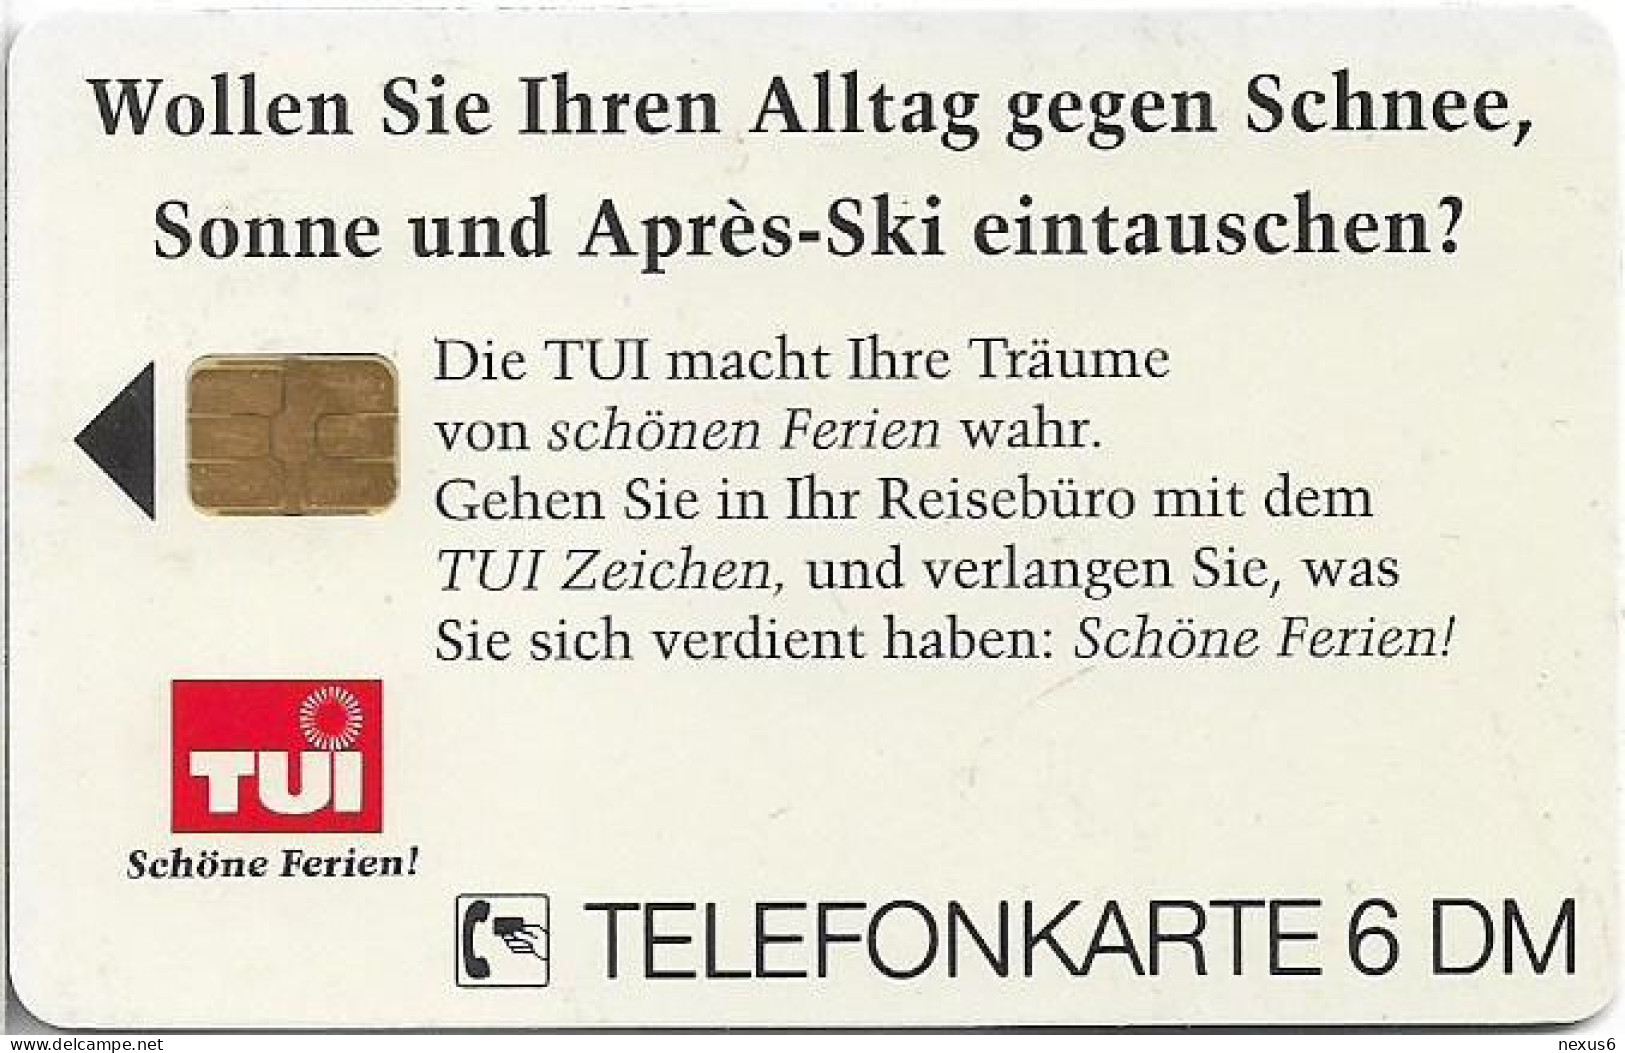 Germany - TUI 11 - Skifahrer - O 0472 - 11.1993, 6DM, 10.000ex, Used - O-Series : Séries Client